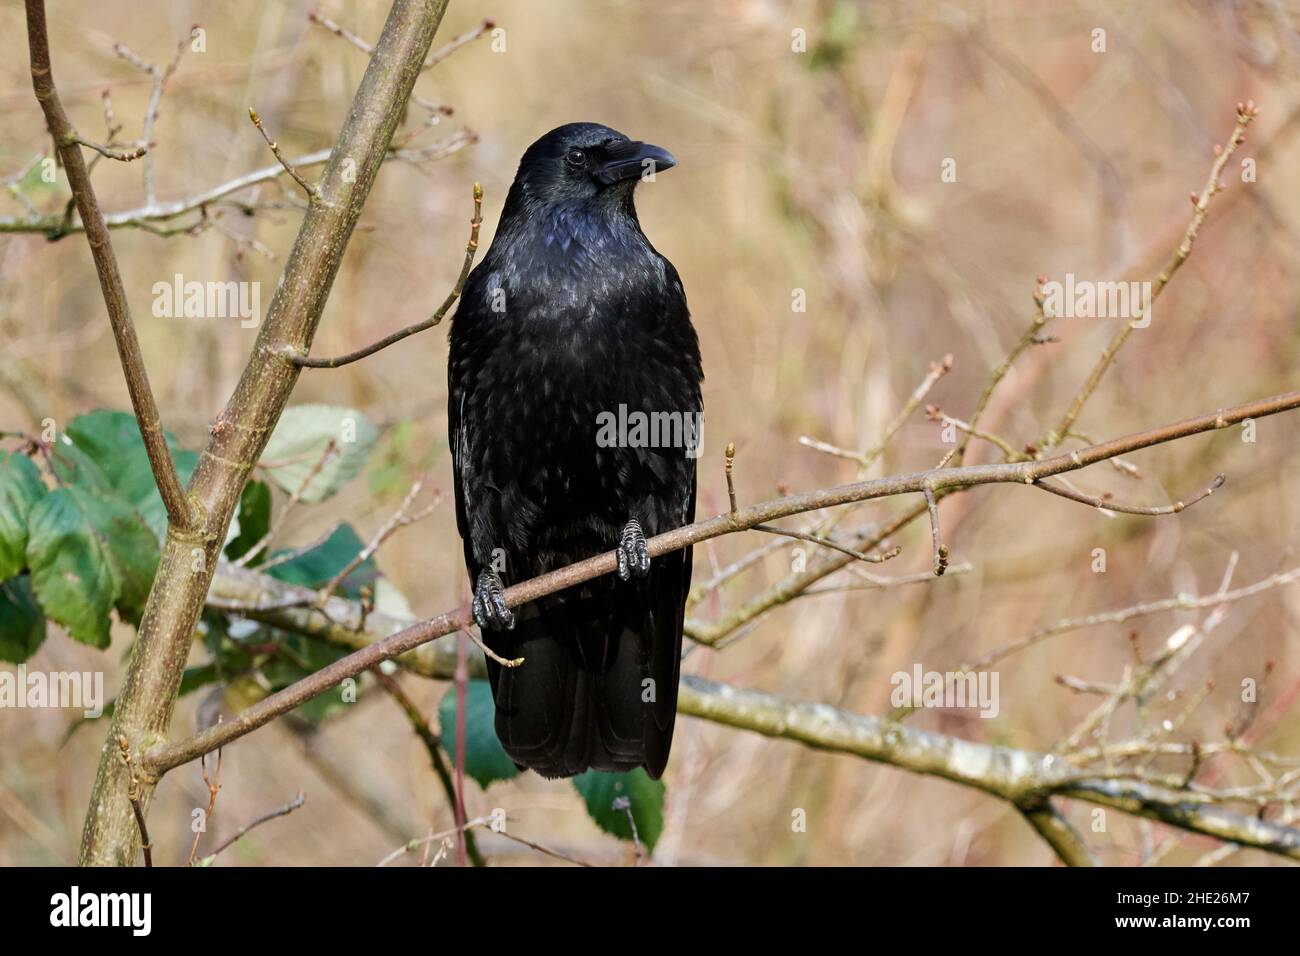 Cuervo común (Corvus corax) sentado en el árbol. Pájaro negro grande de la familia del cuervo. Foto de stock